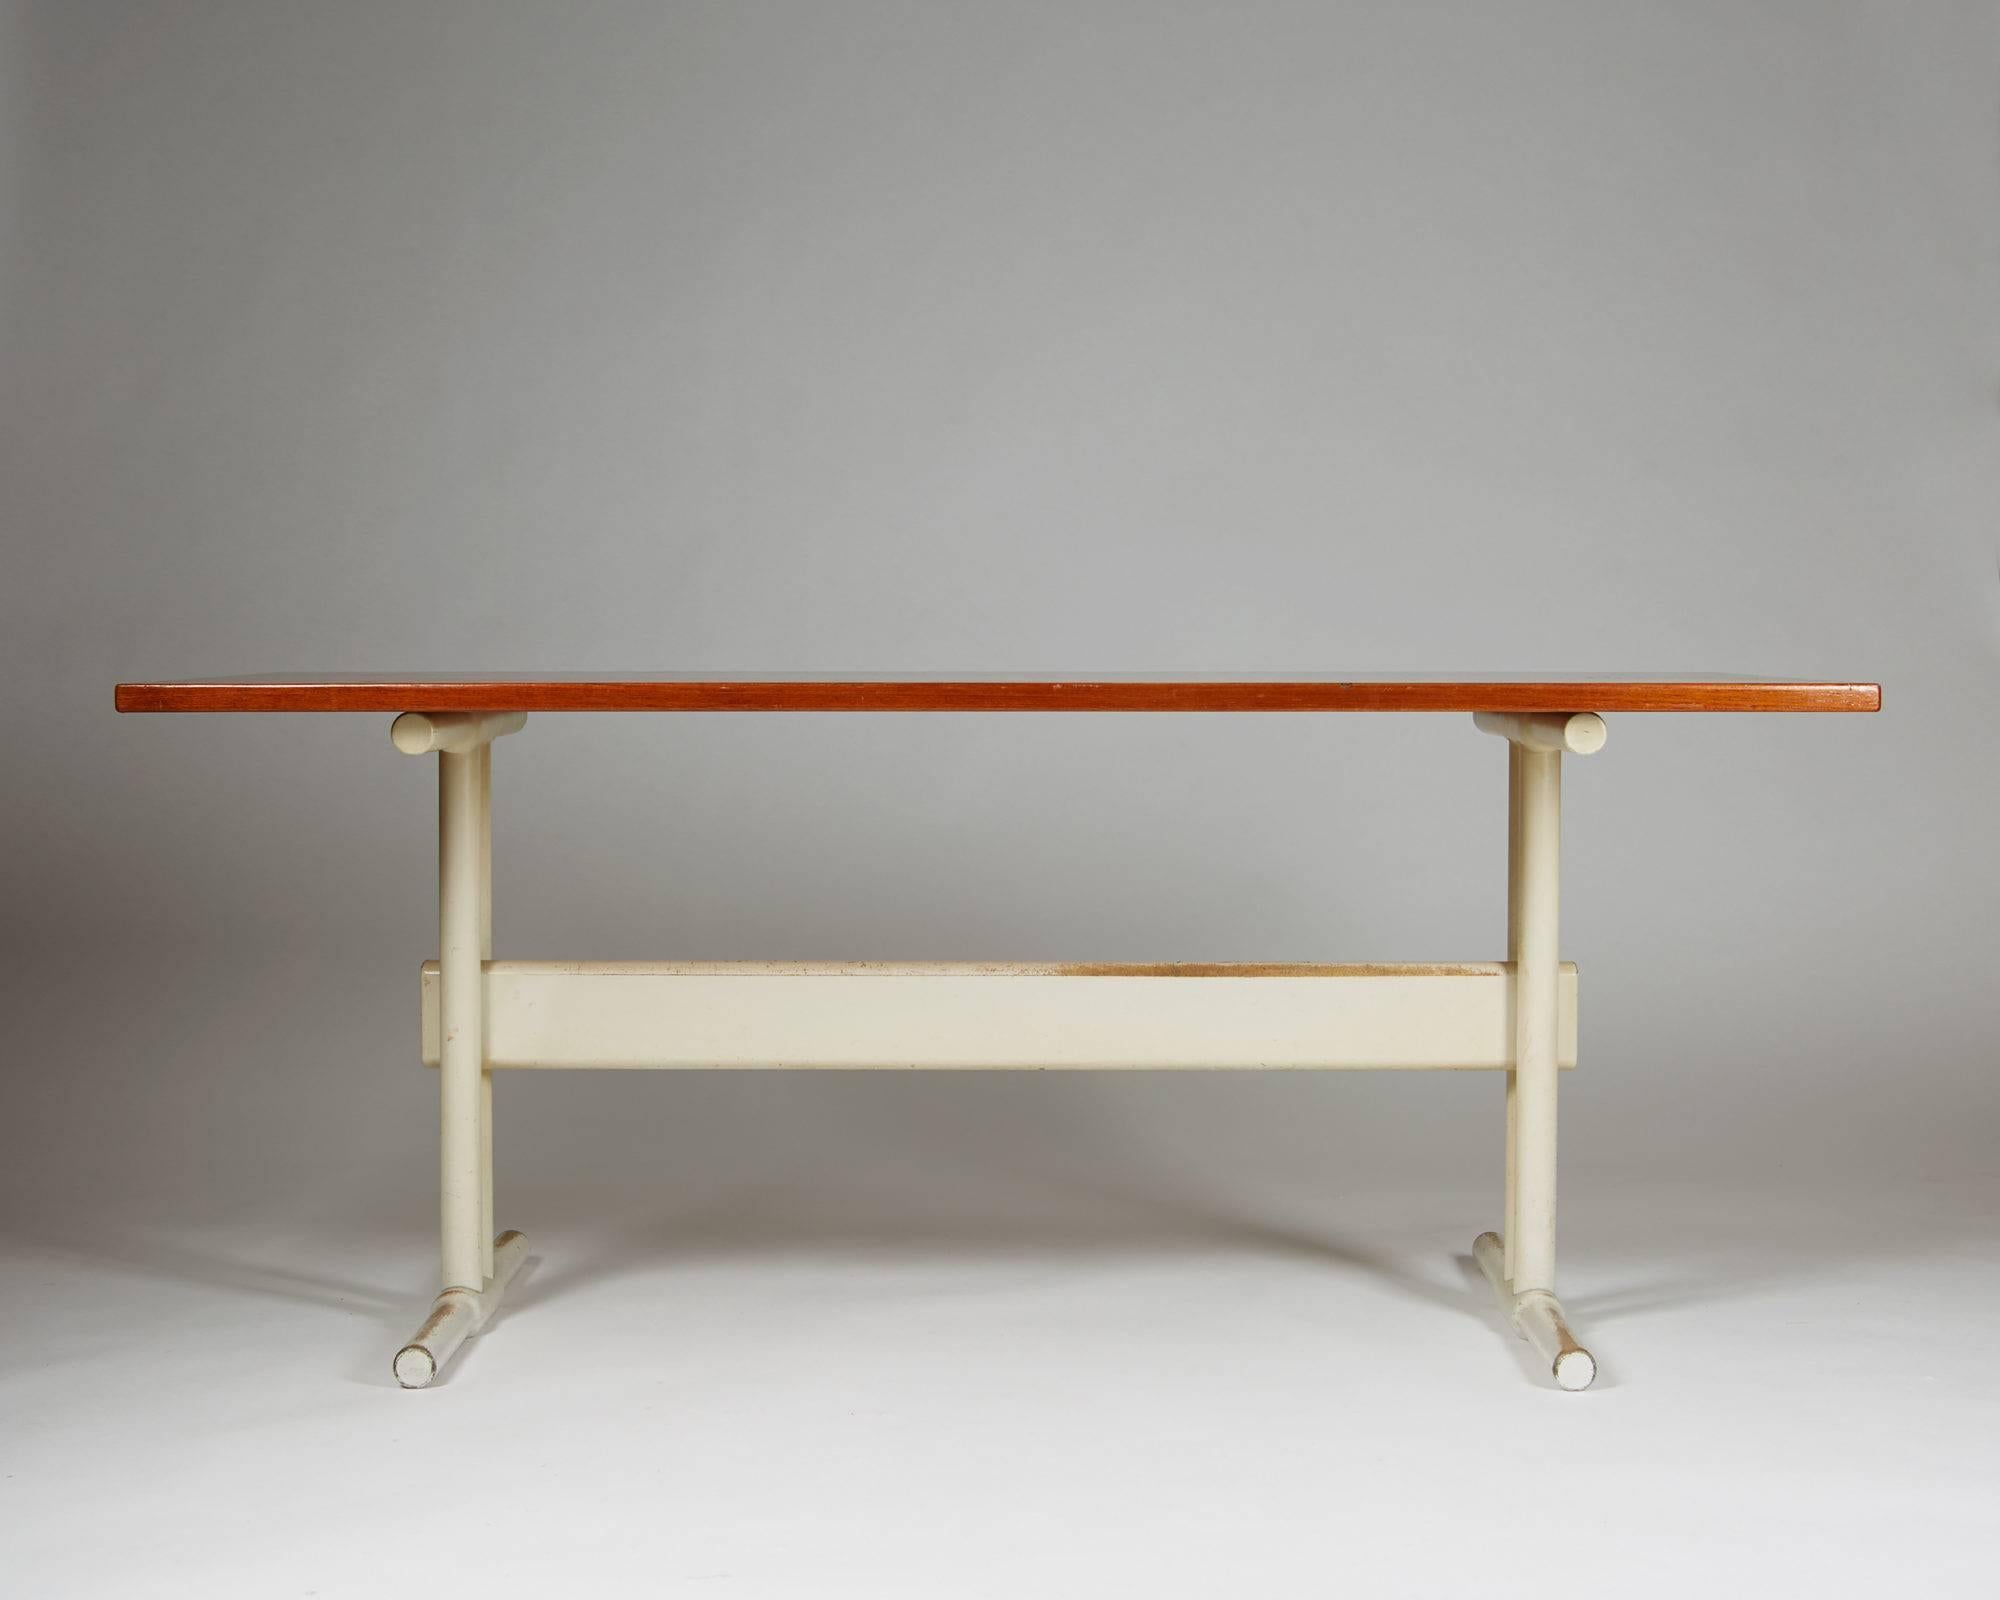 Bureau/table à manger, anonyme, Danemark, années 1950.
Plateau en teck et base en bois laqué.

Mesures : H 72 cm/ 28 ½